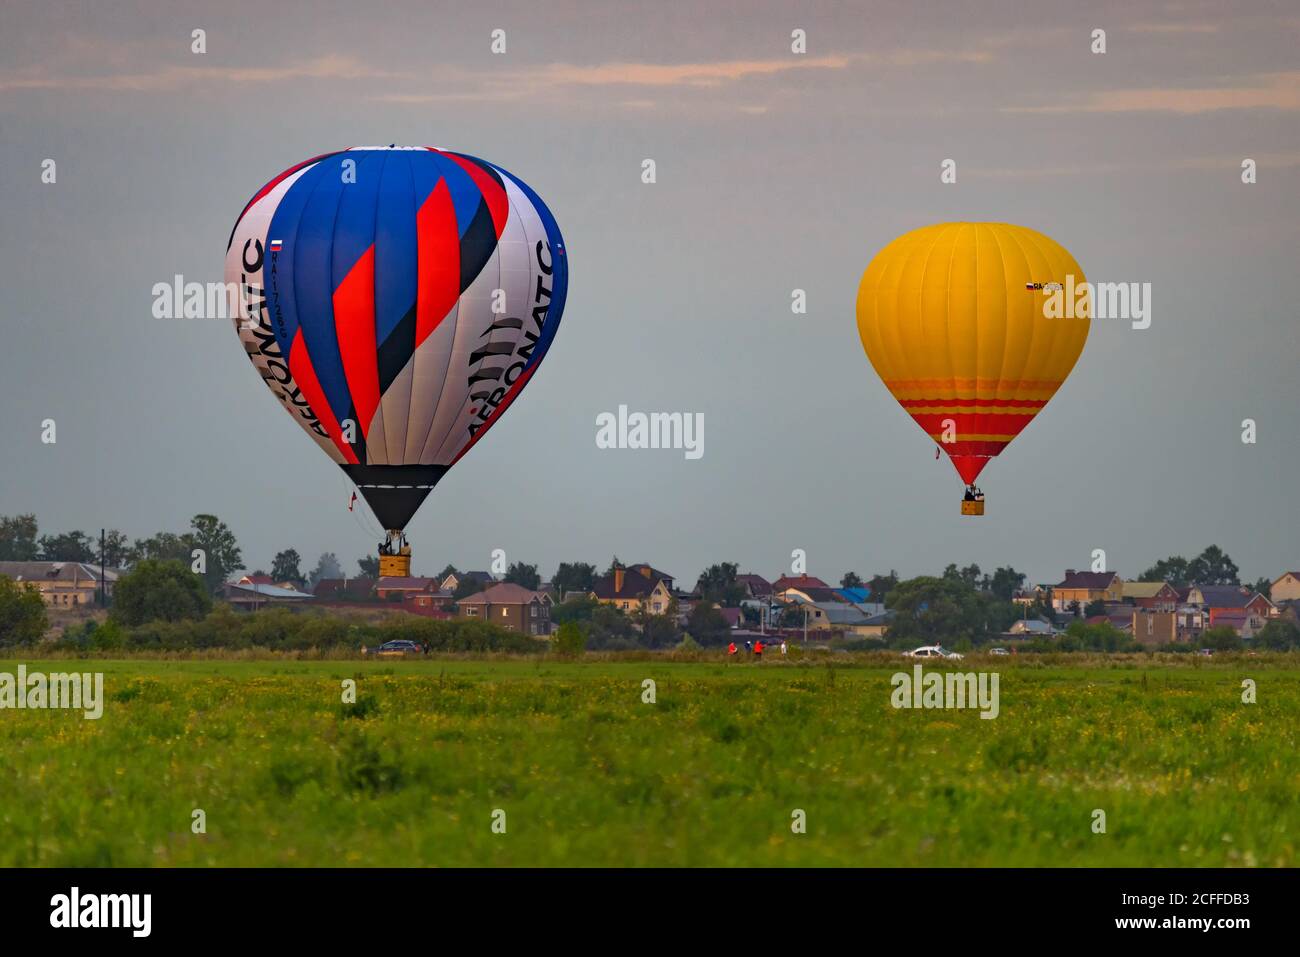 RYAZAN, RUSSIA - 16 AGOSTO 2020: Due palloncini ad aria calda che volano su un campo nel crepuscolo con un villaggio sullo sfondo Foto Stock